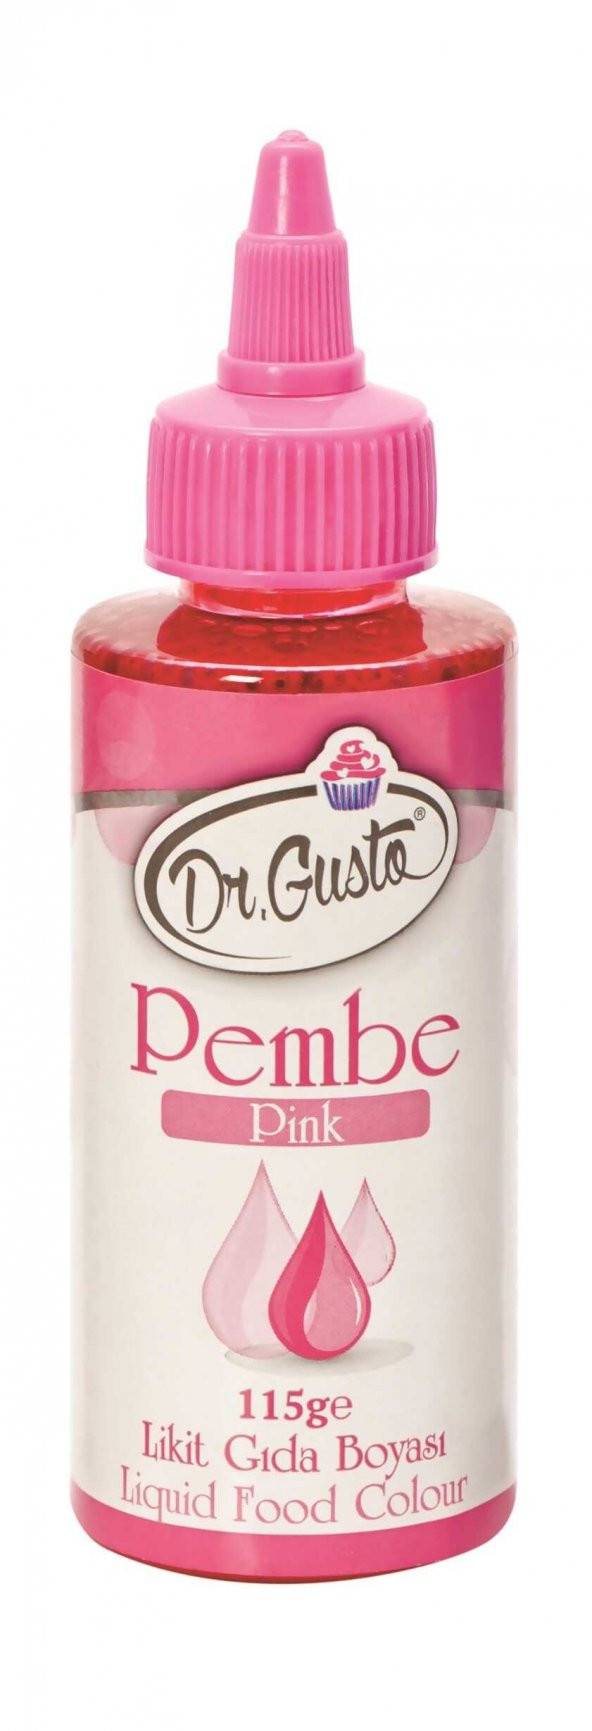 Dr Gusto Pembe Sıvı Gıda Boyası 115 Gr (15 FARKLI RENK SEÇENEĞİ)